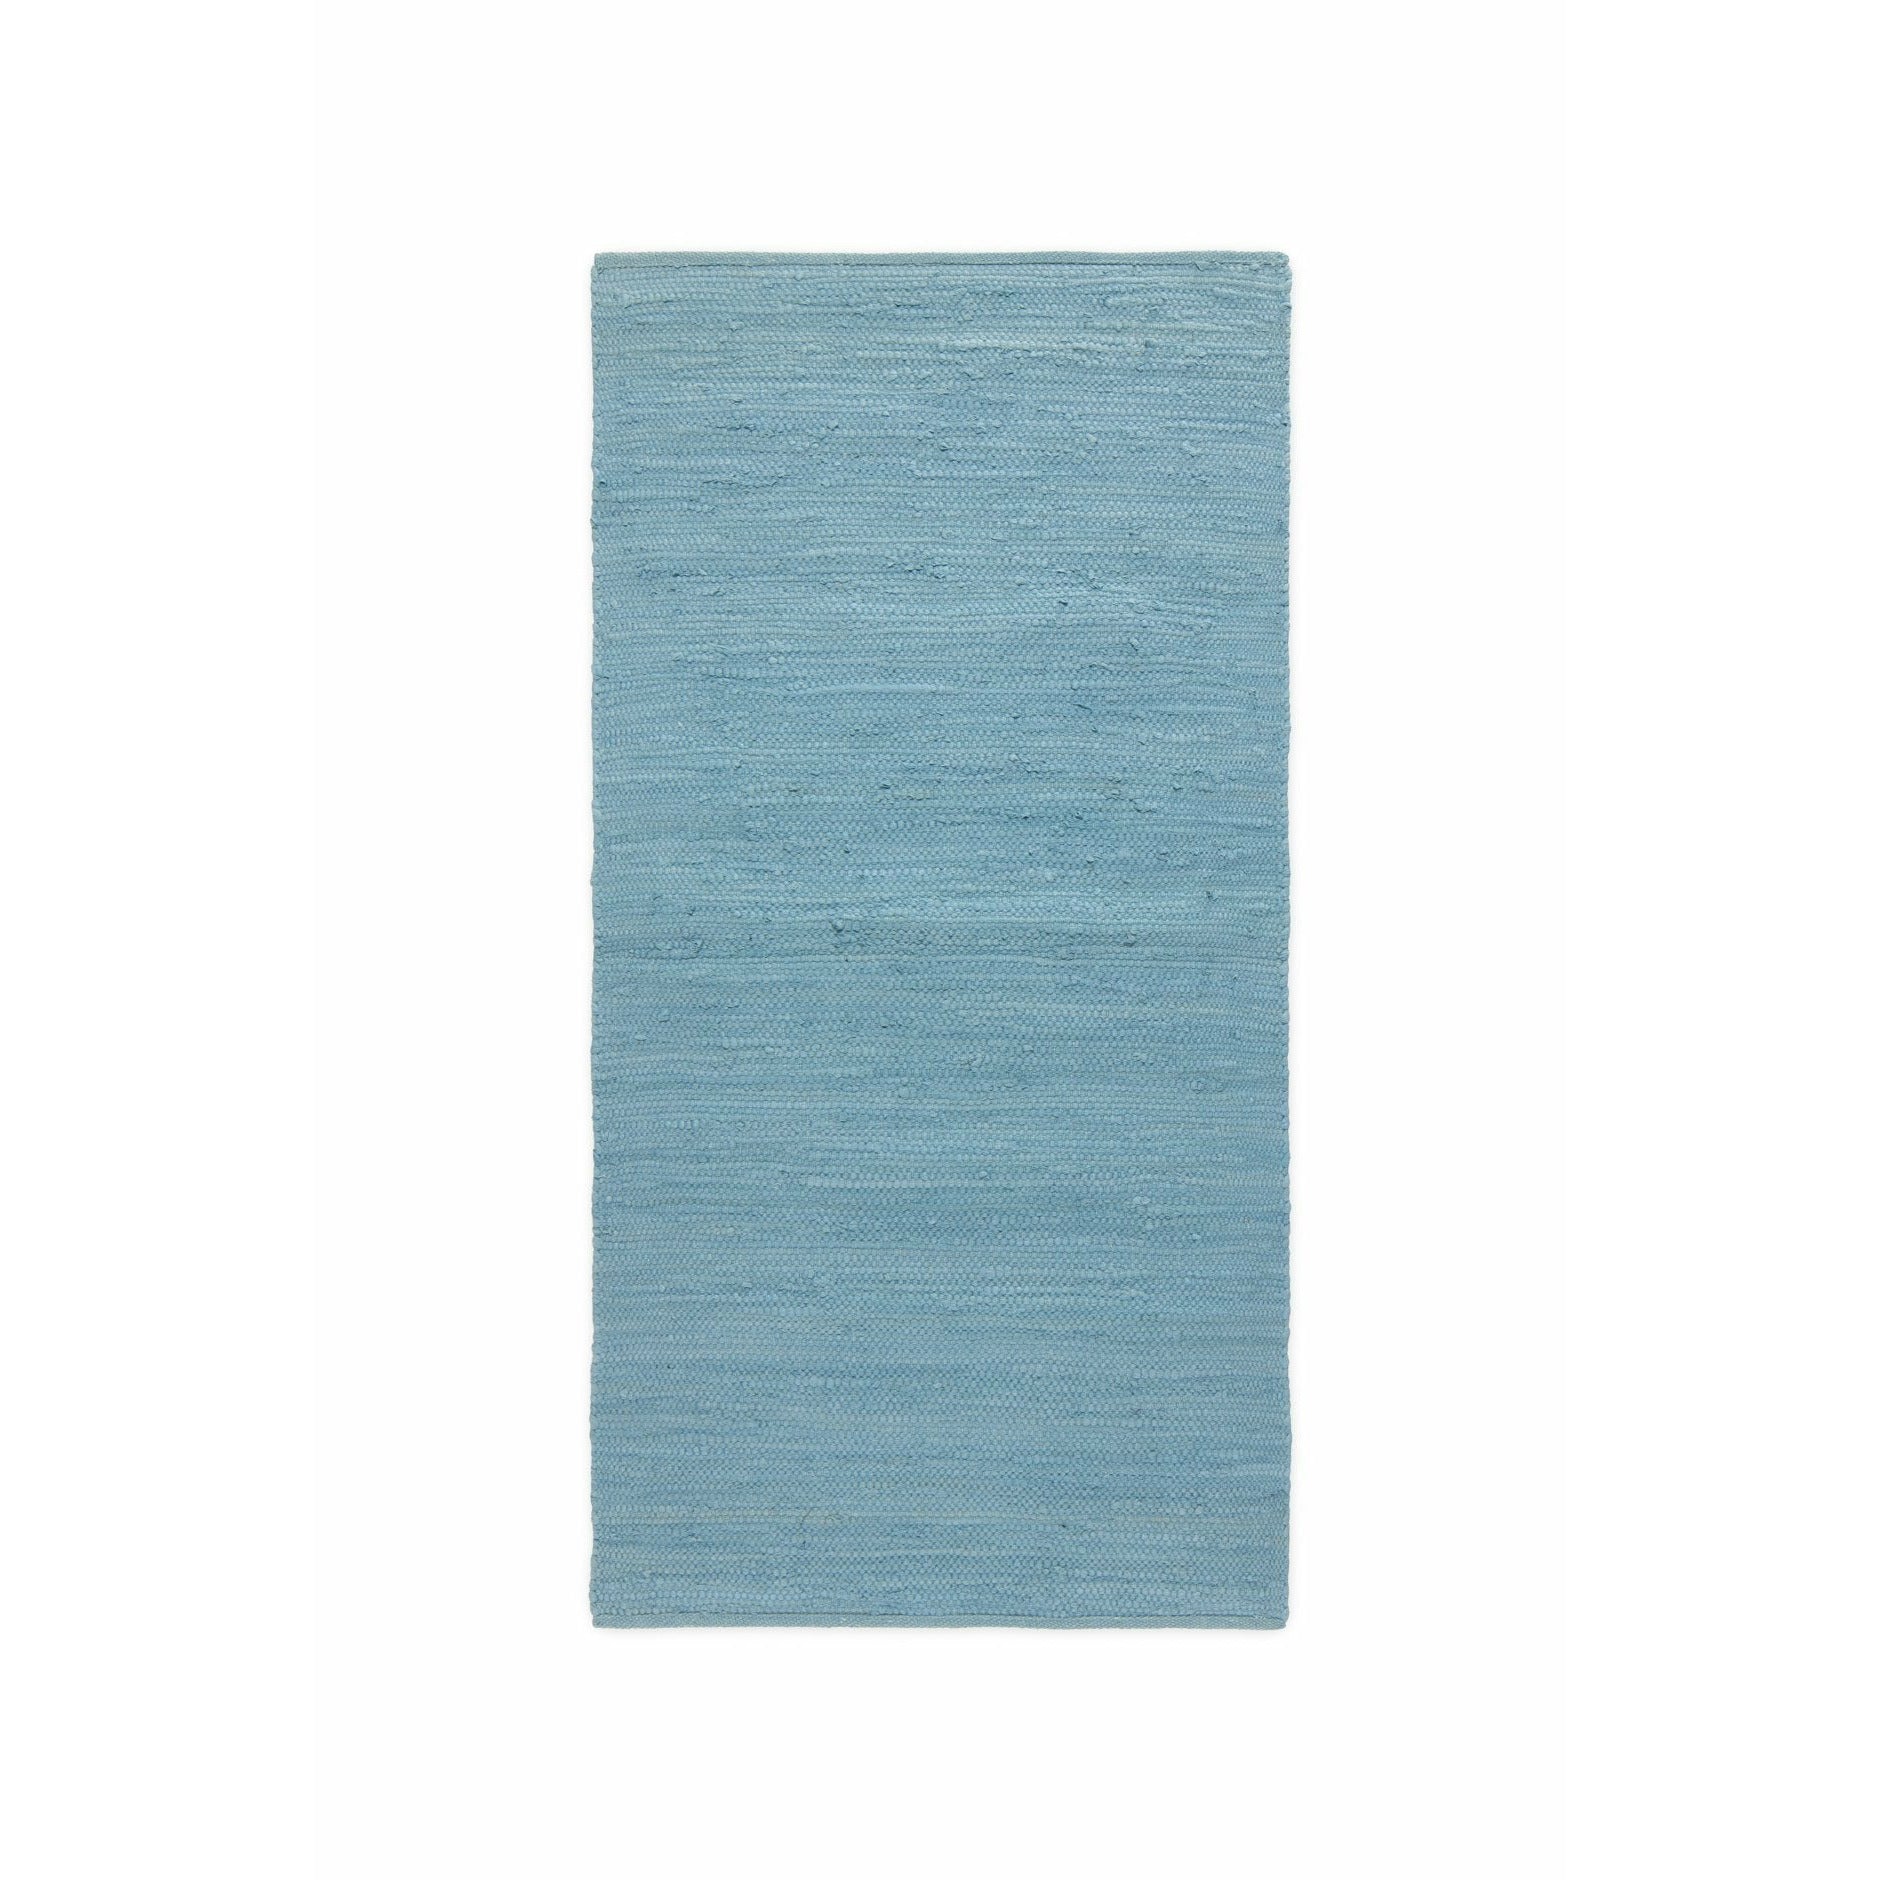 Rug Solid Bomuldstæppe Etertnes Blå, 170 x 240 cm